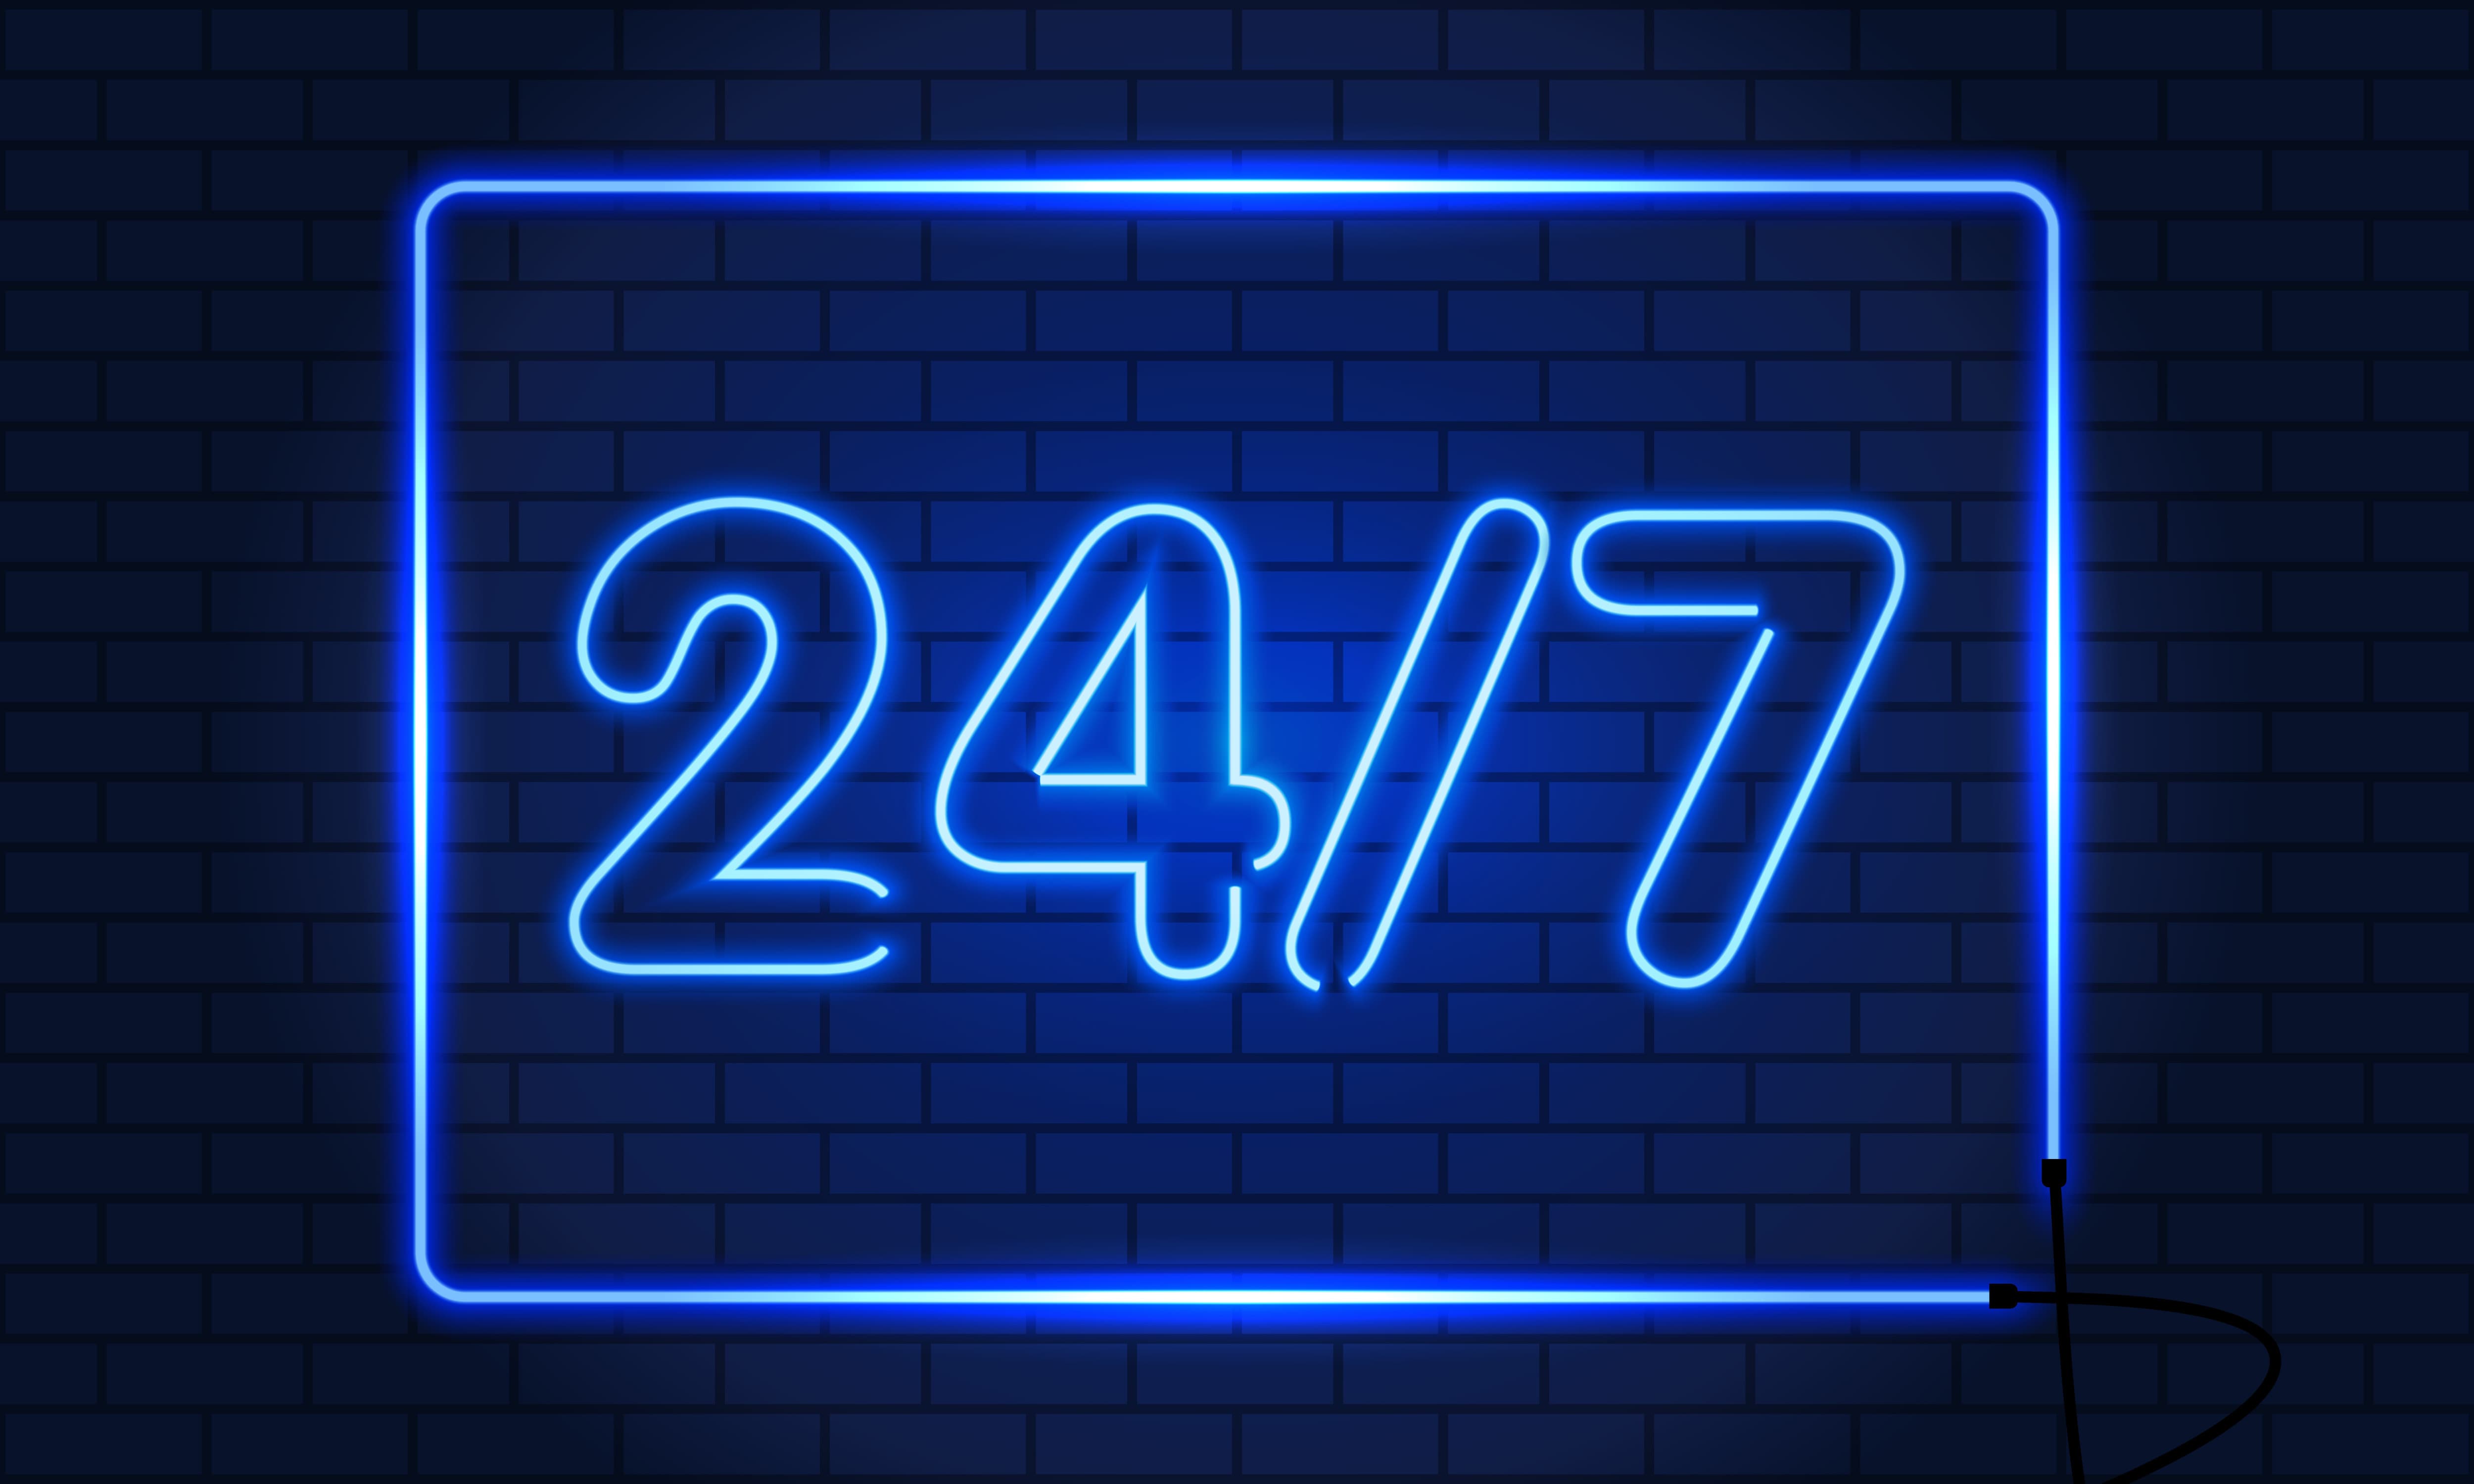 letreiro de neon escrito "24/7"